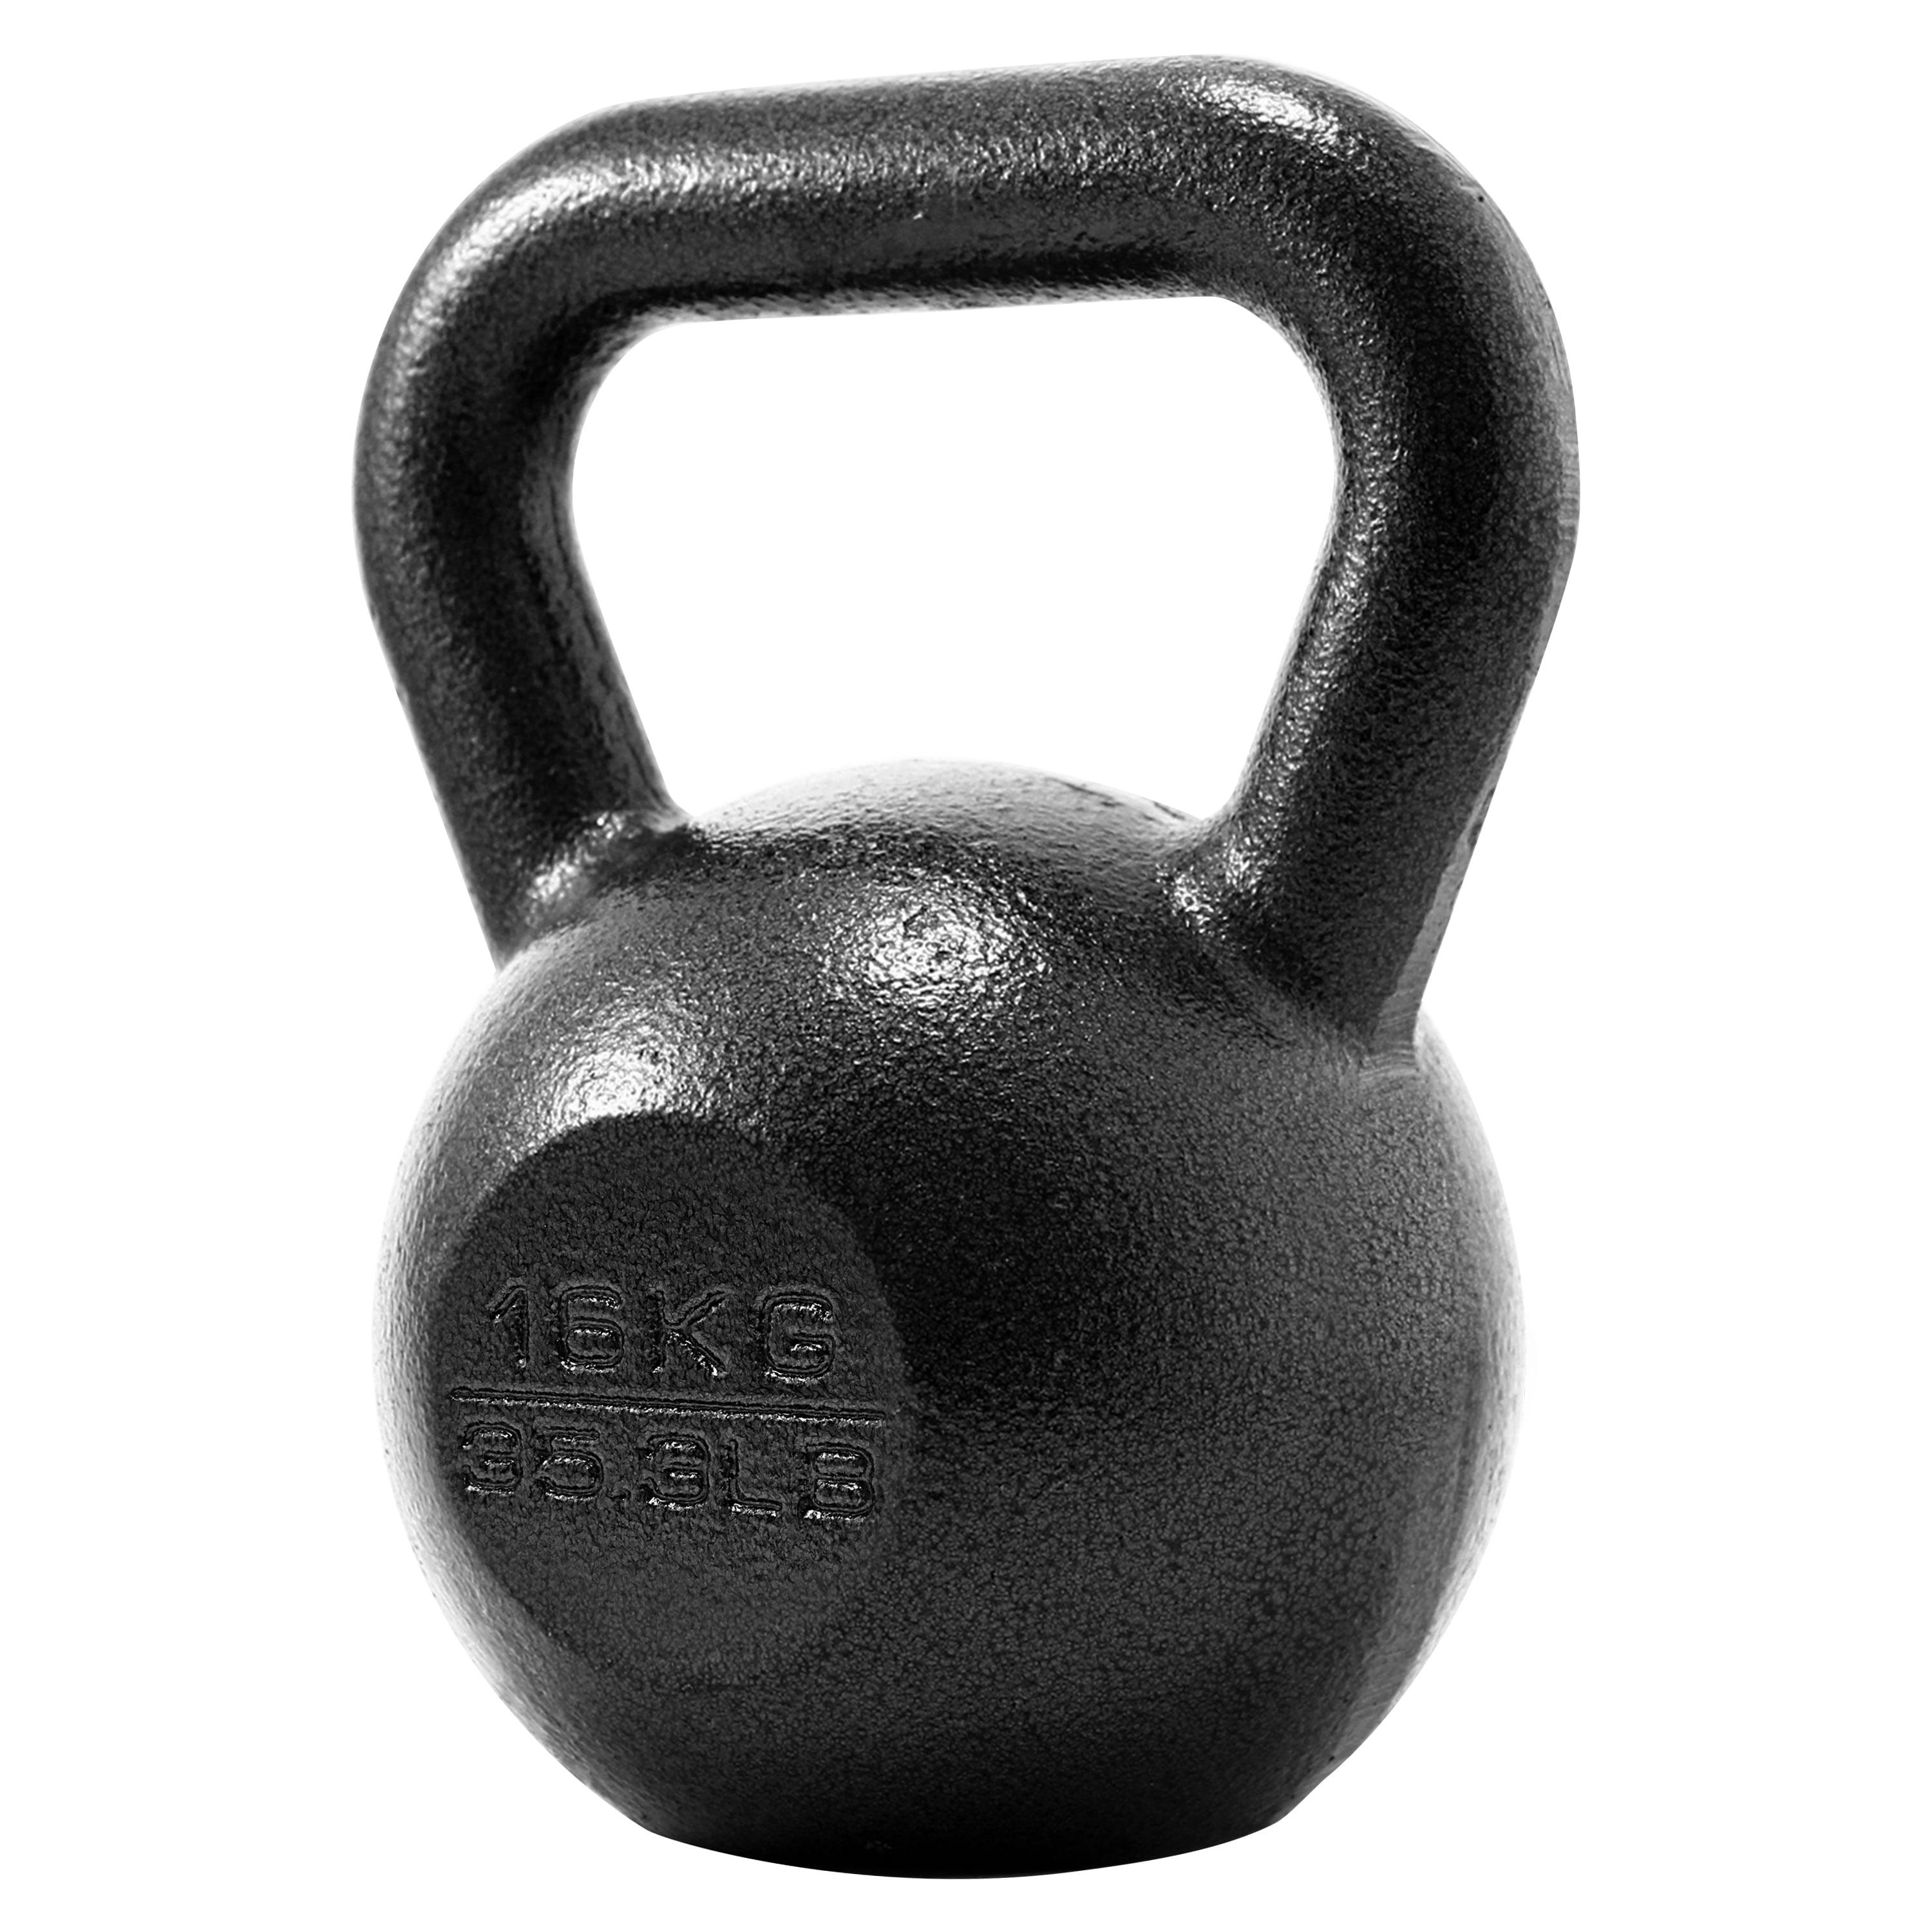 Black Vinyl  kettlebell  1 x 16kg Fitness Training New 